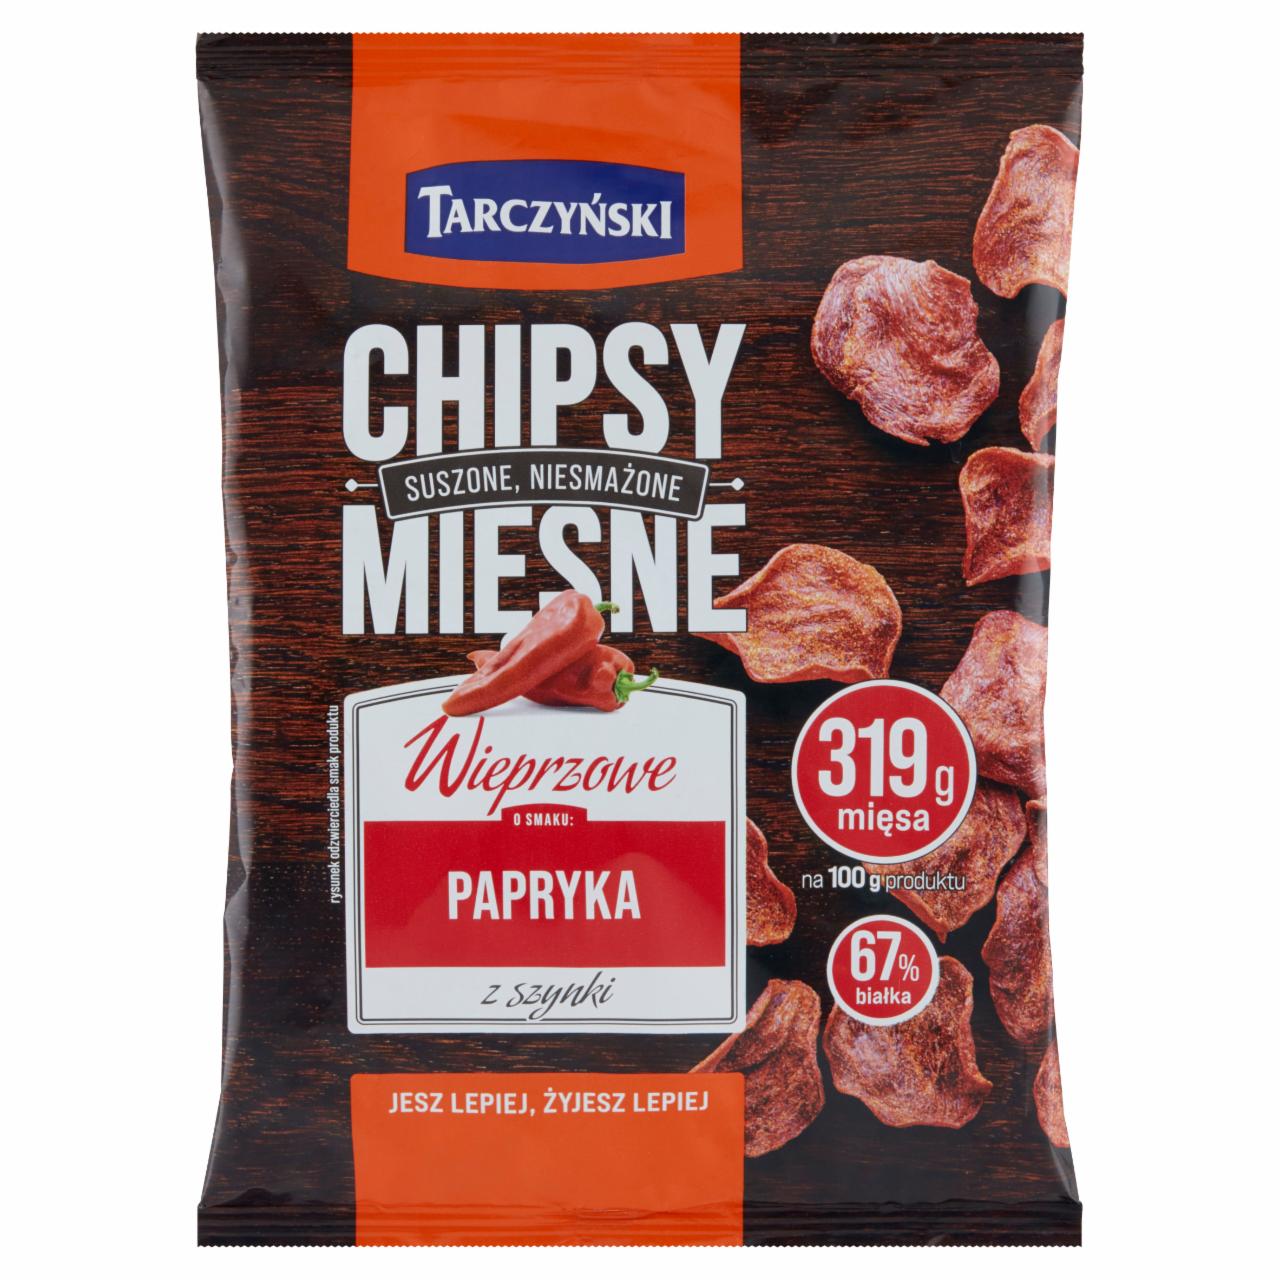 Fotografie - Chipsy mięsne wieprzowe papryka z szynką Tarczyński